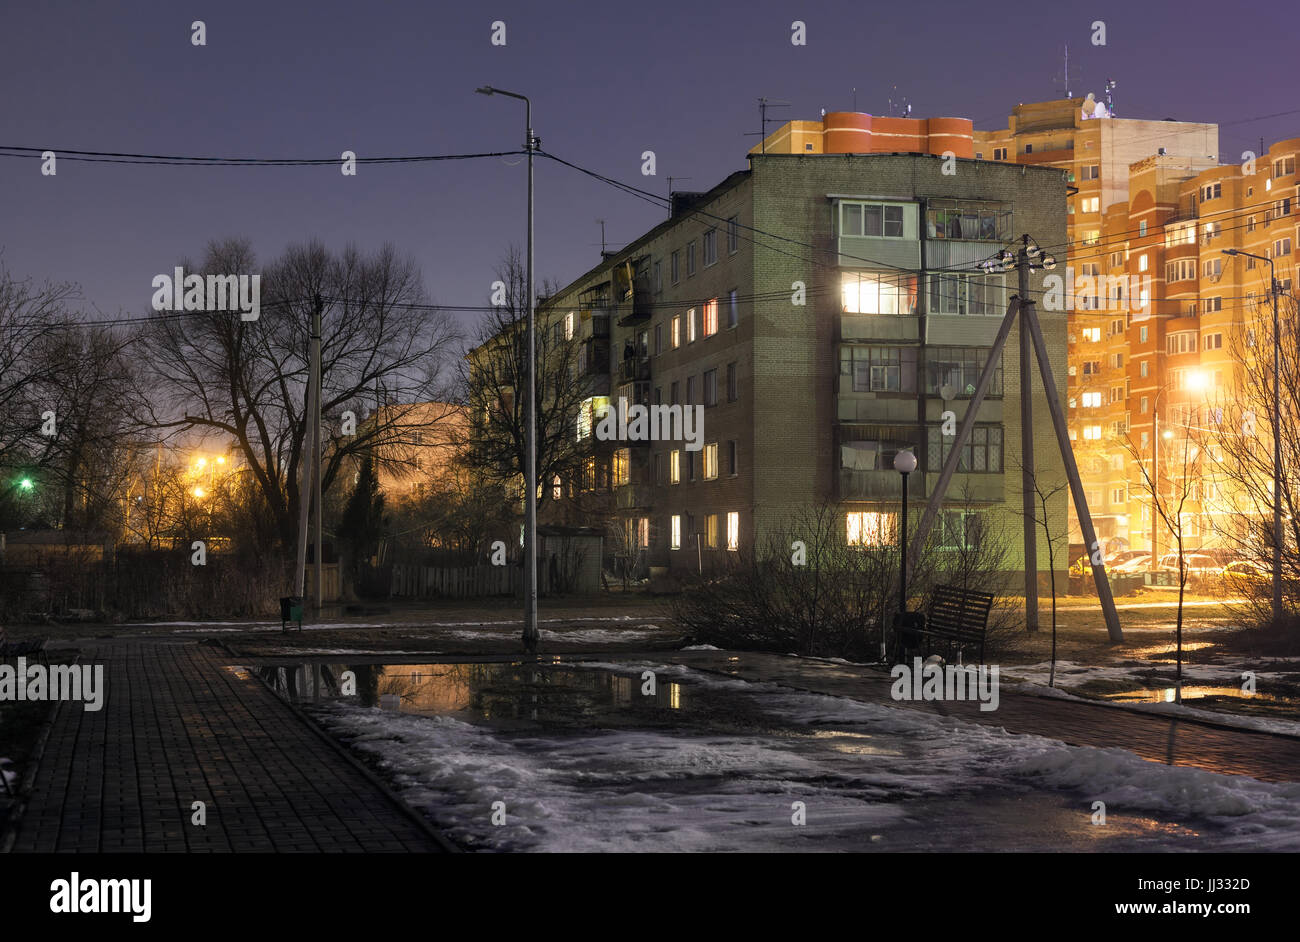 L'ancien régime soviétique de cinq étages typique bâtiment résidentiel à côté de la place sans éclairage. Scène de nuit Banque D'Images